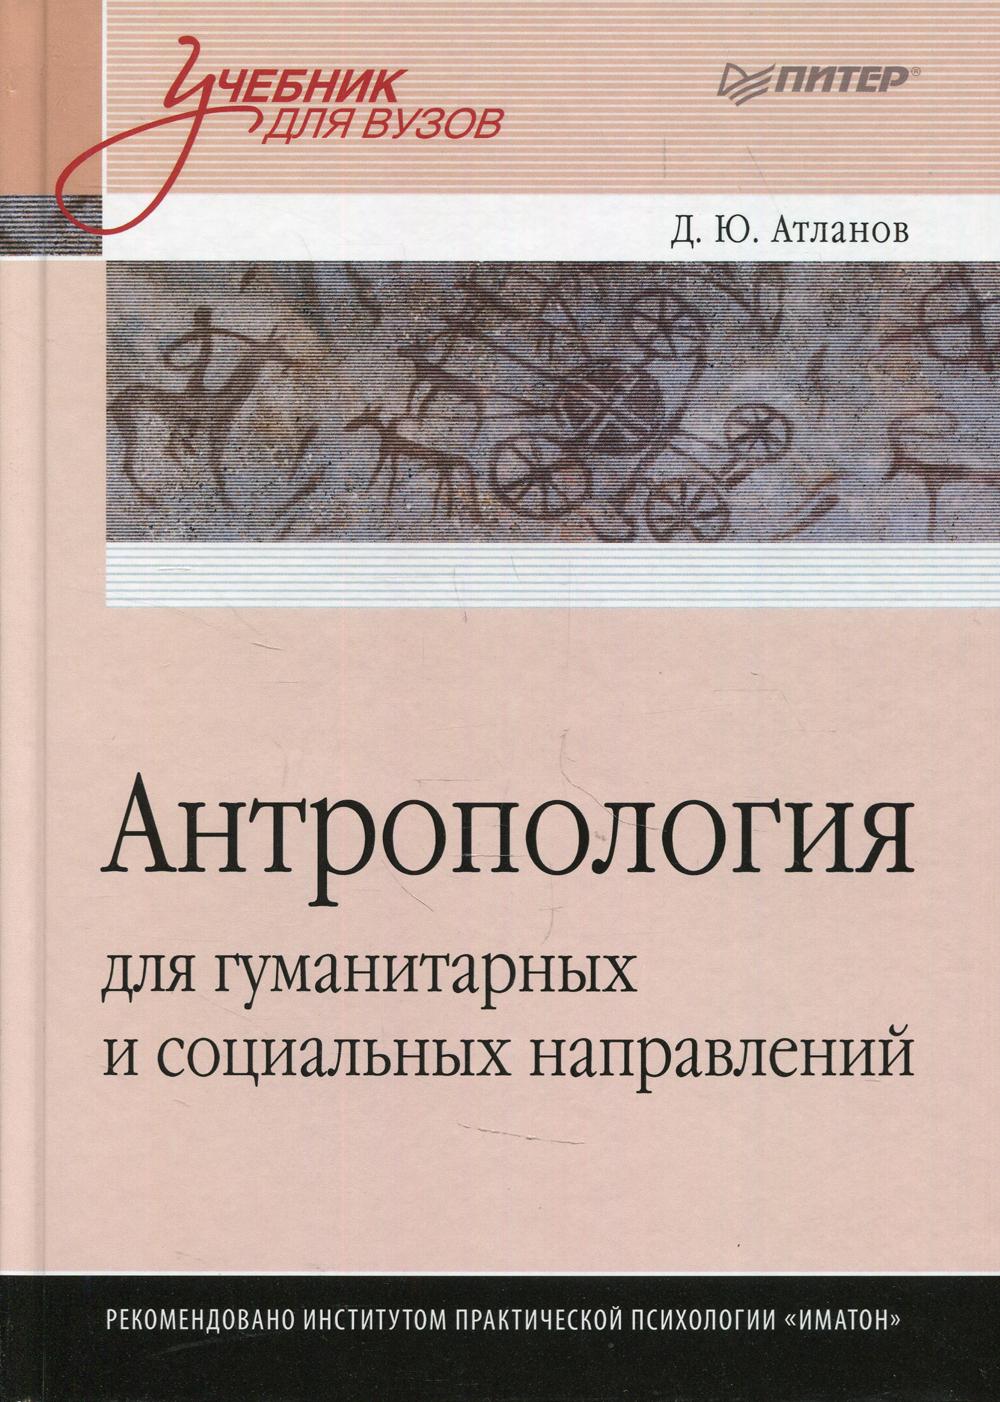 Книга Антропология для гуманитарных и социальных направлений